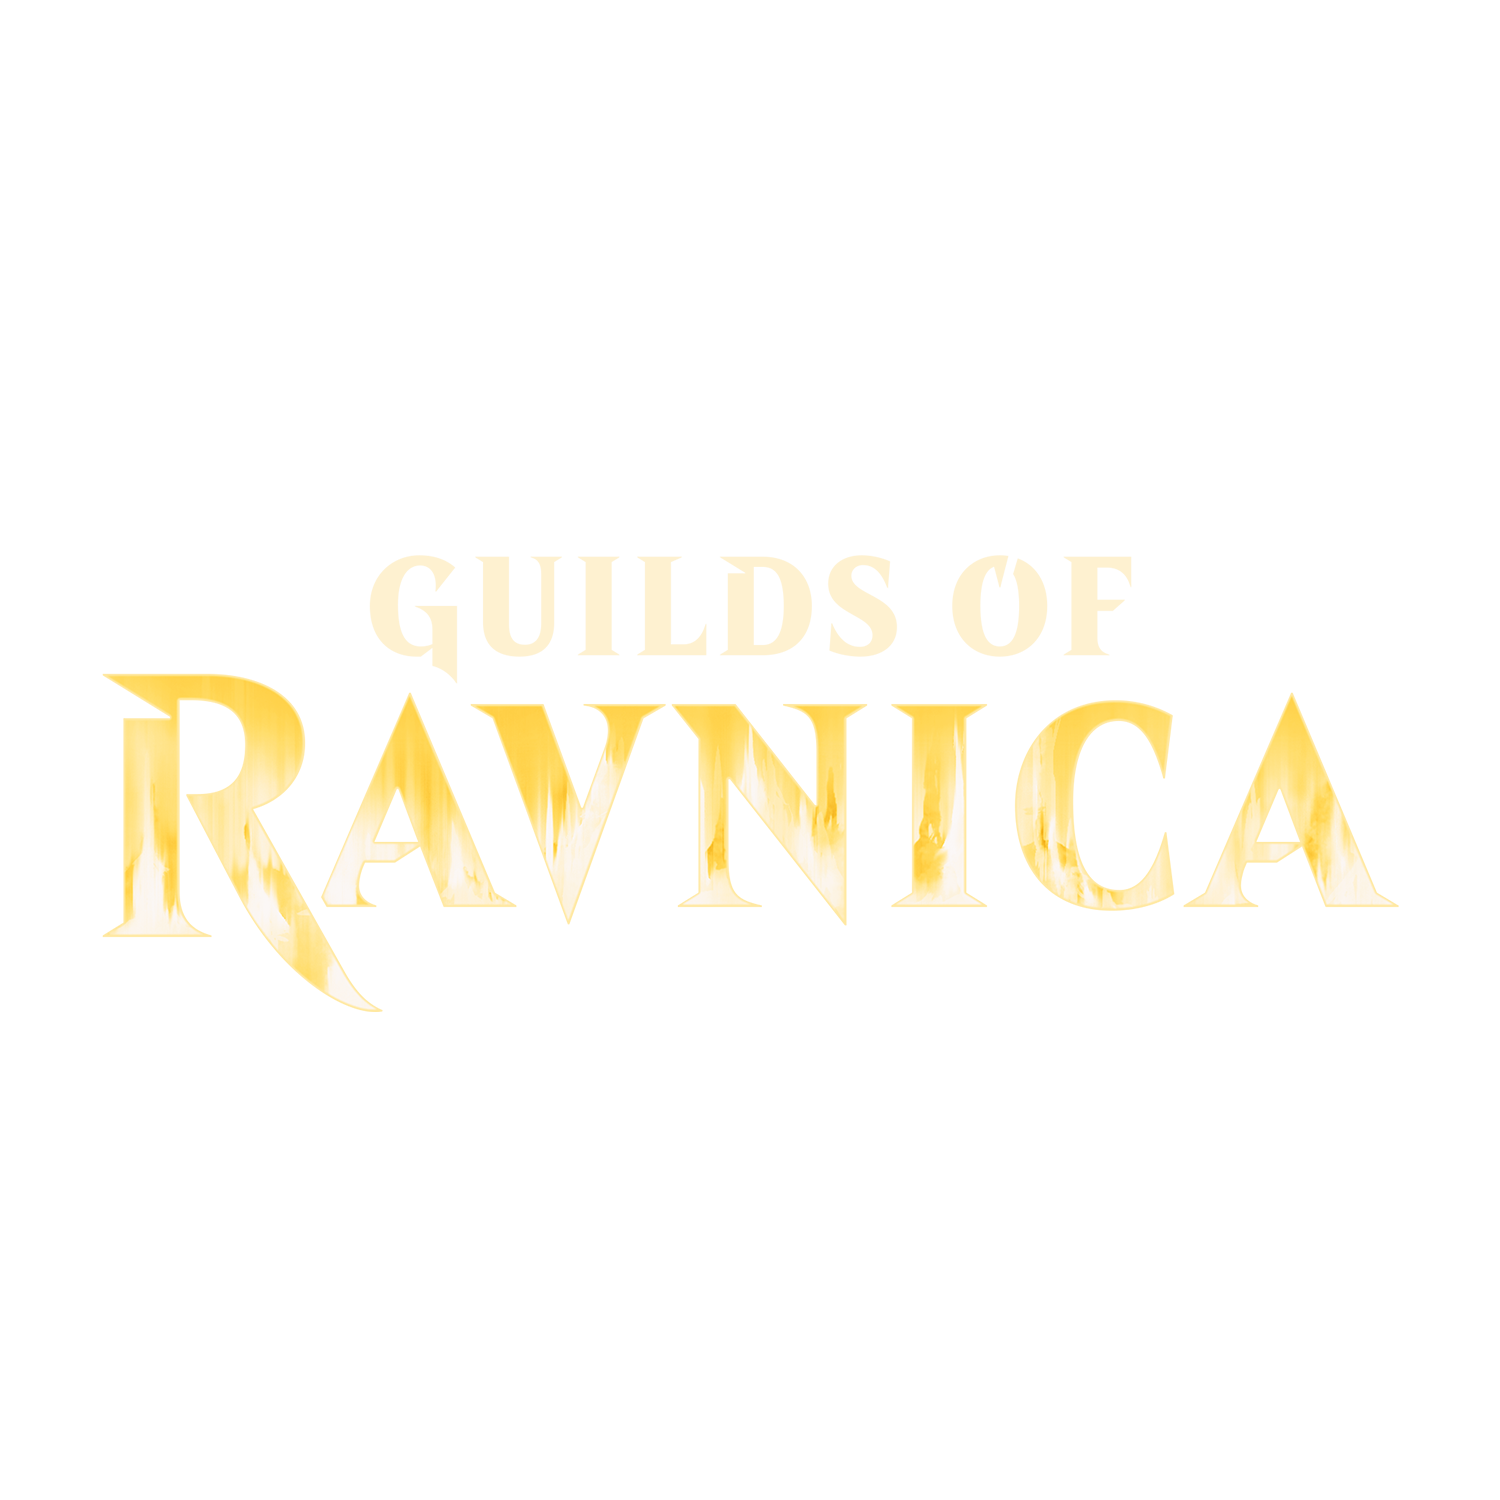 Prerelease Guilds of Ravnica - 2HG